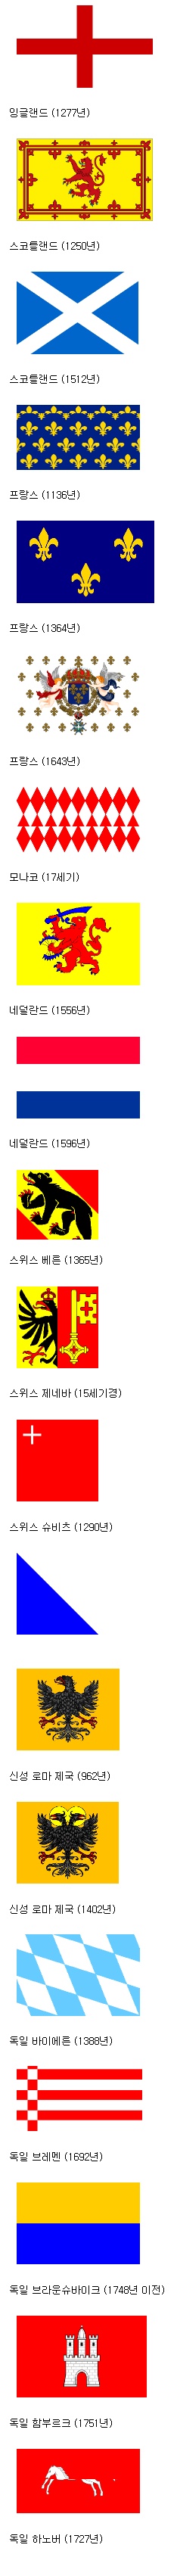 15.jpg : 서유럽의 전통 국기들.jpg